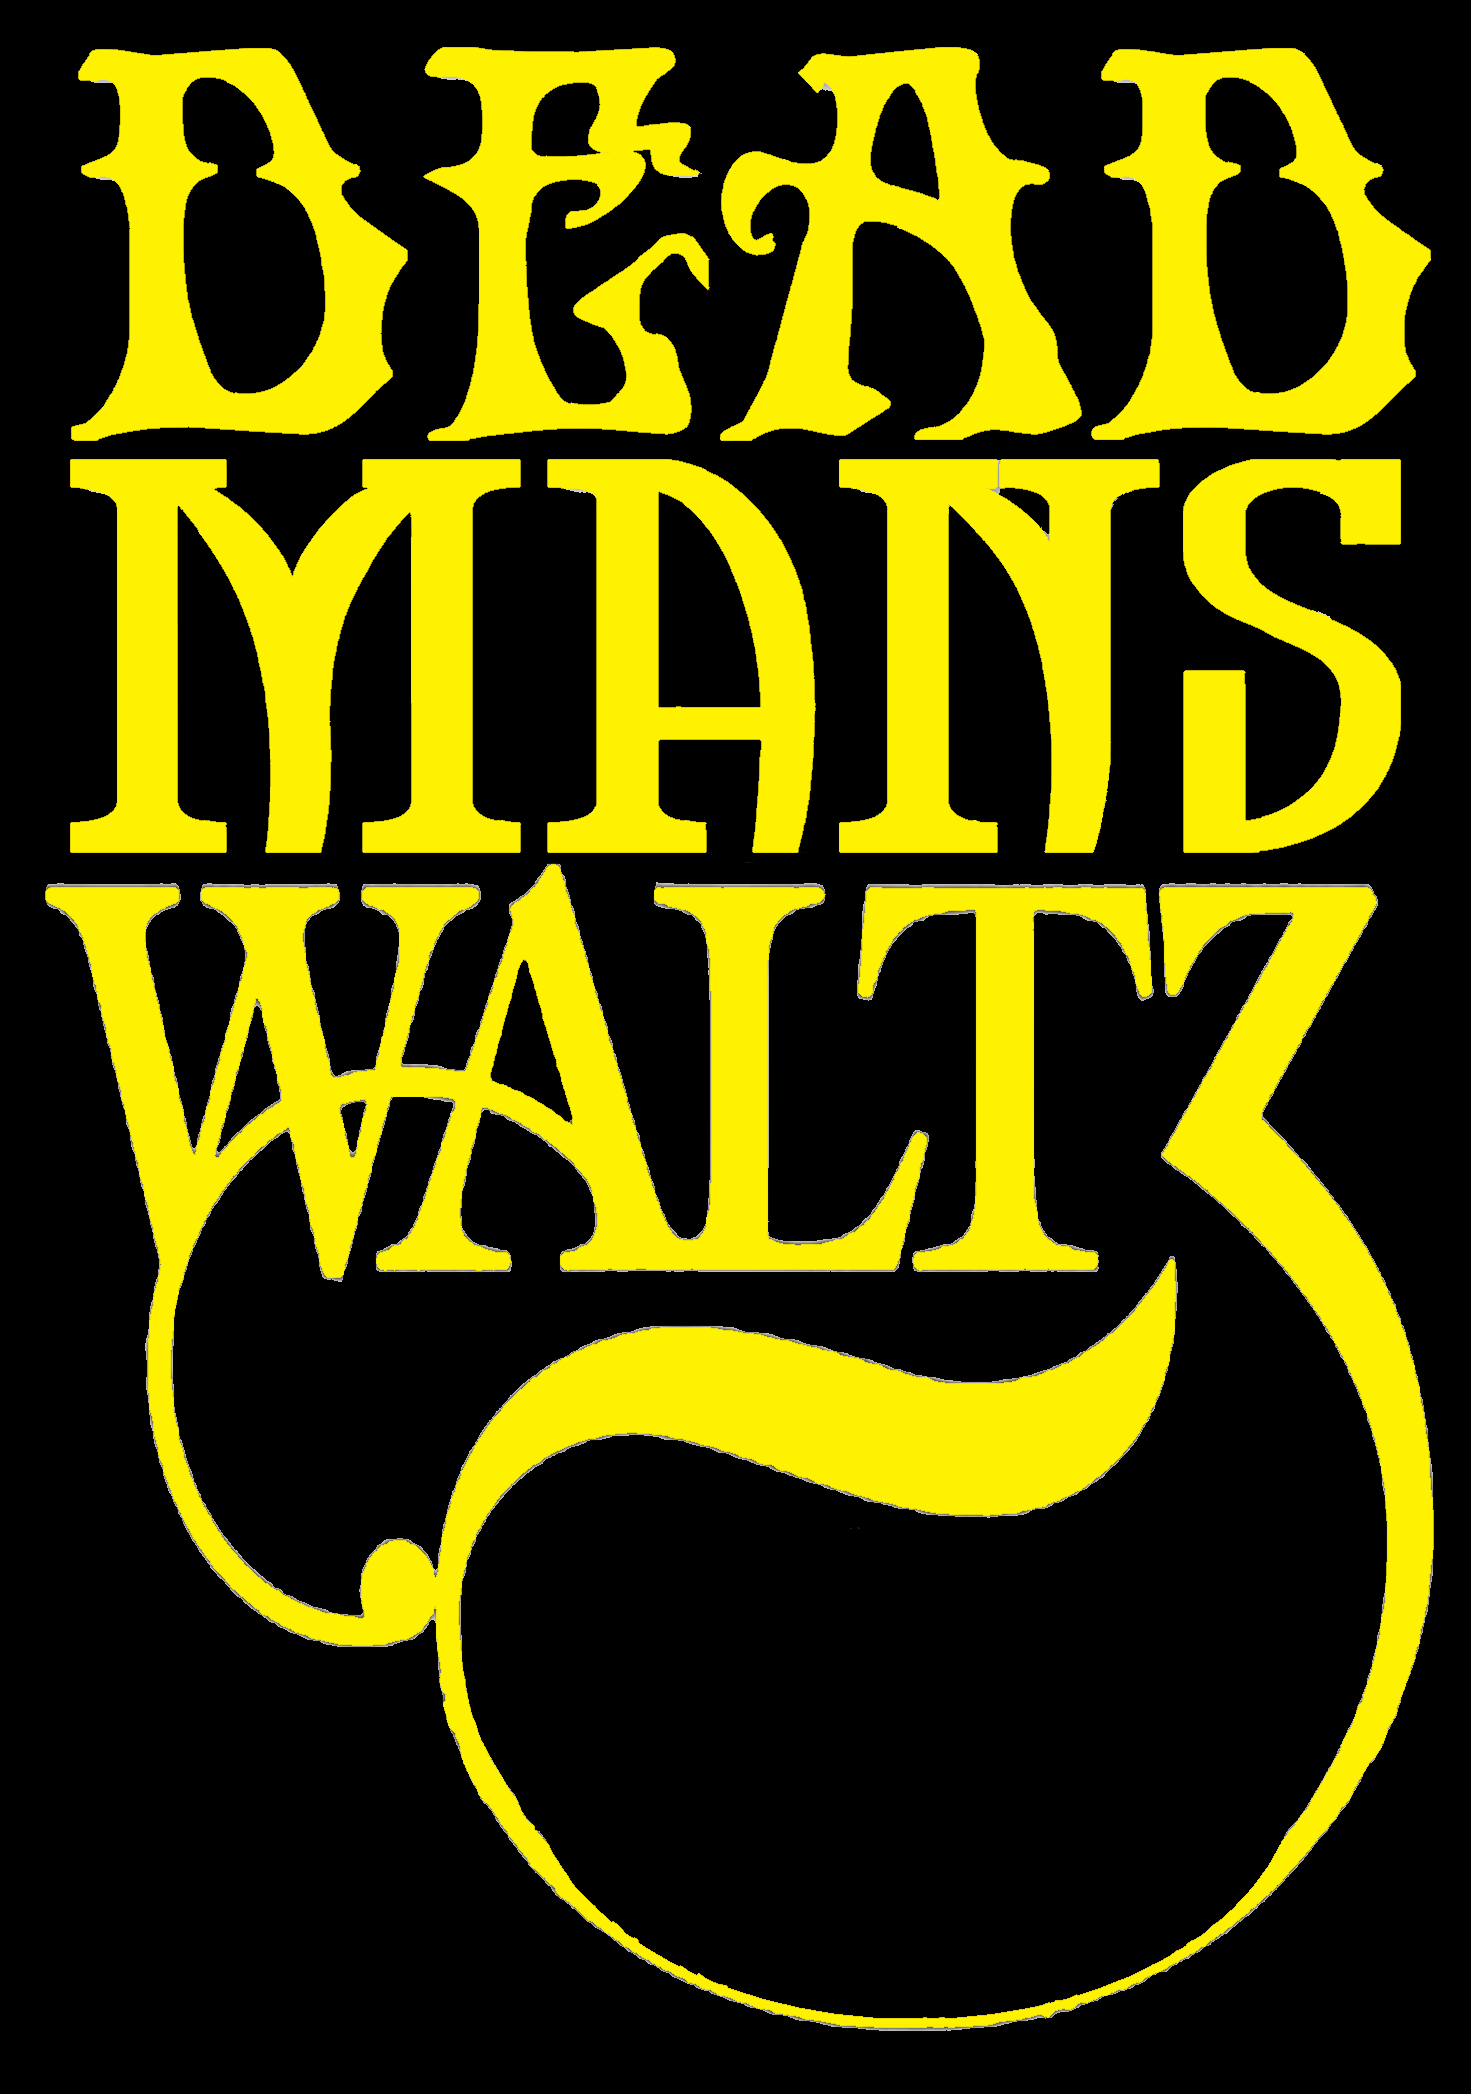 Dead Man's Waltz